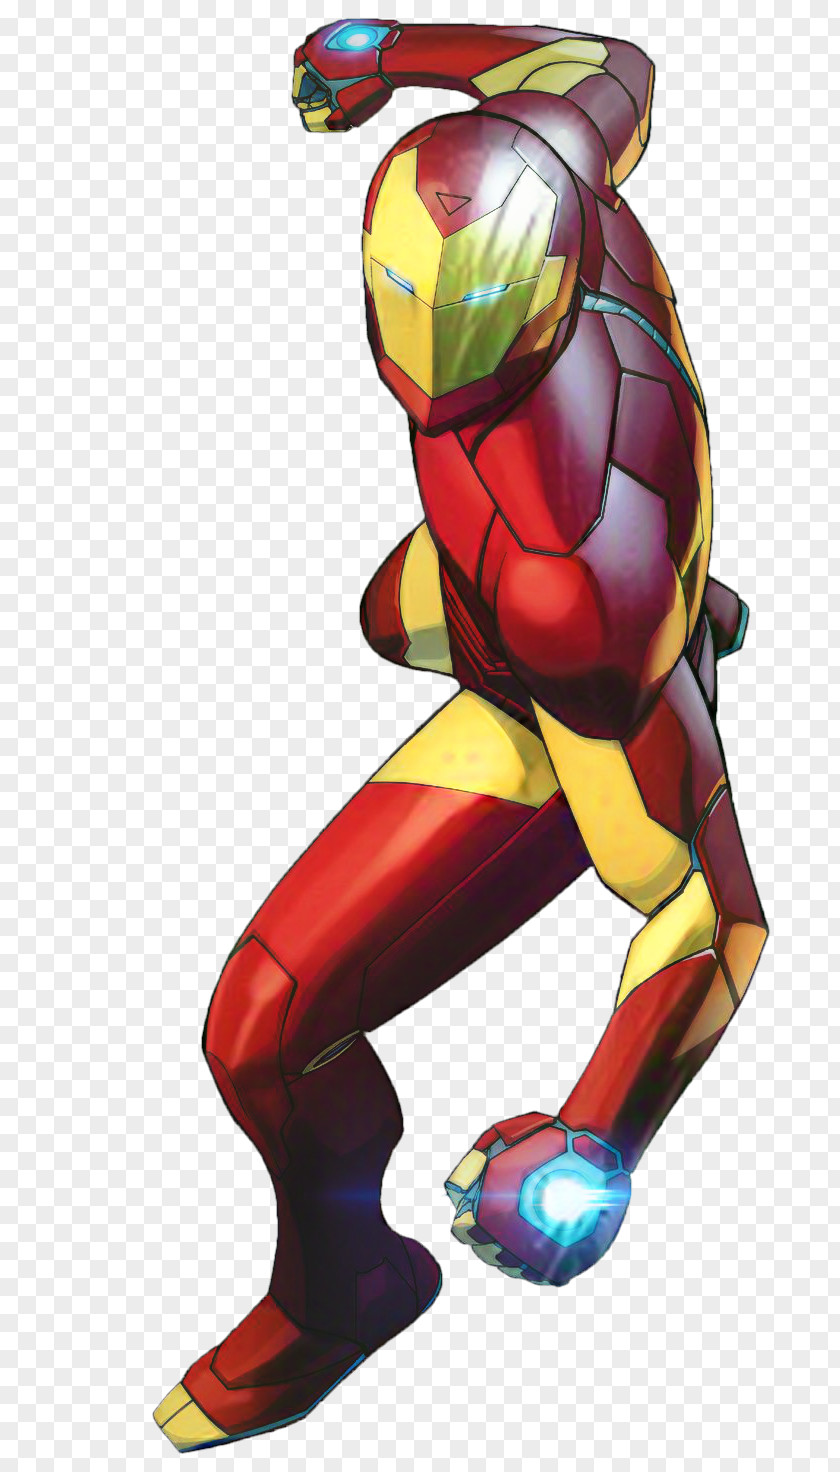 Iron Man's Armor Ultron Superhero Marvel Comics PNG